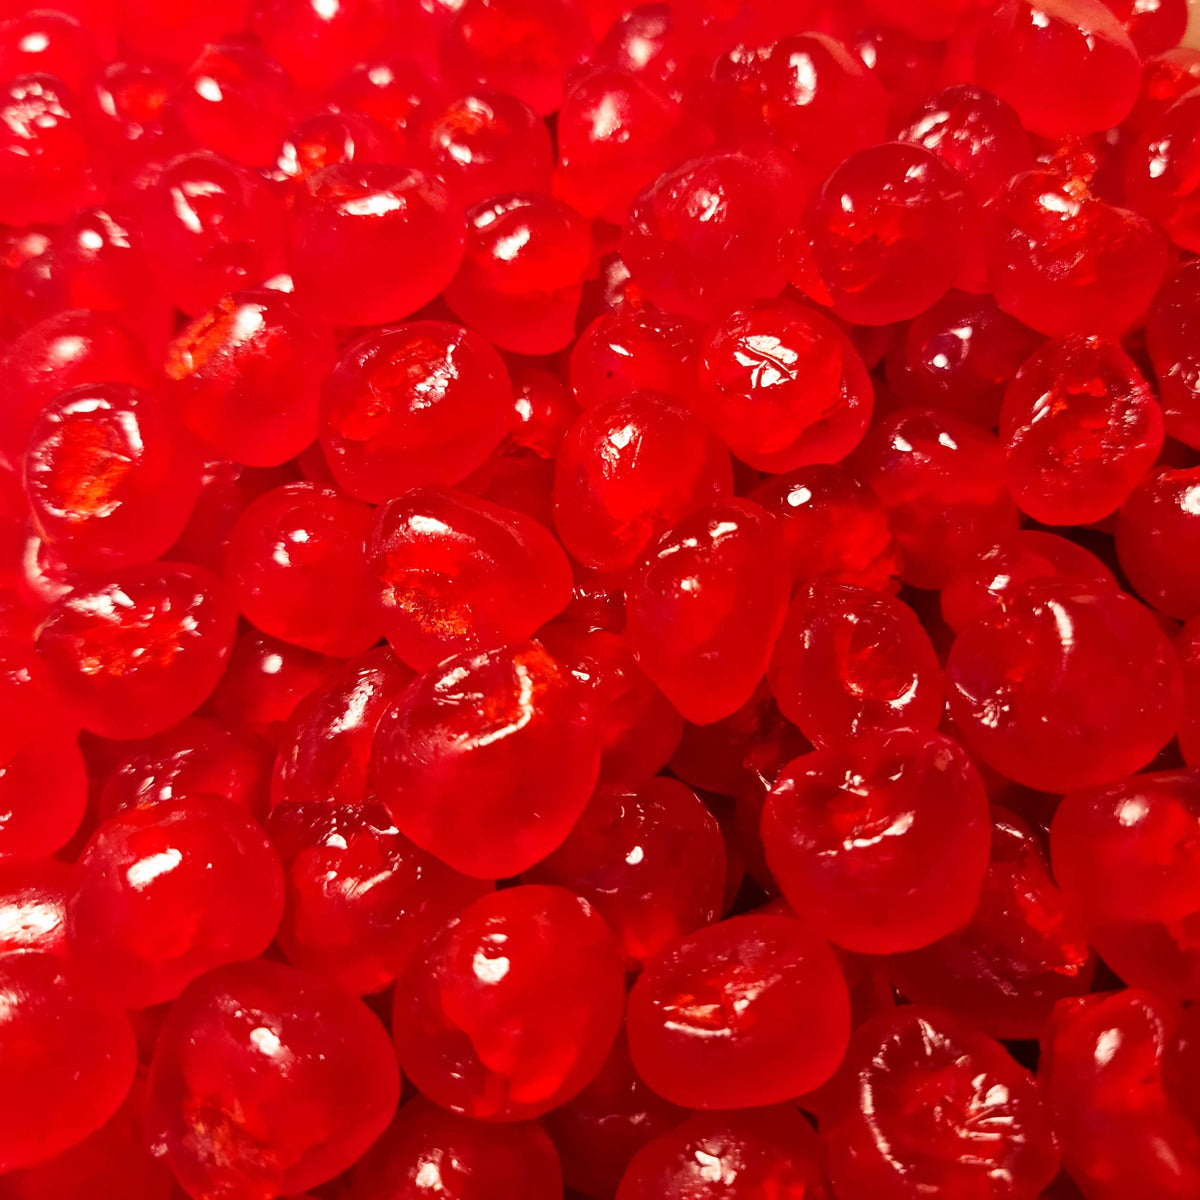 Cherries - Red